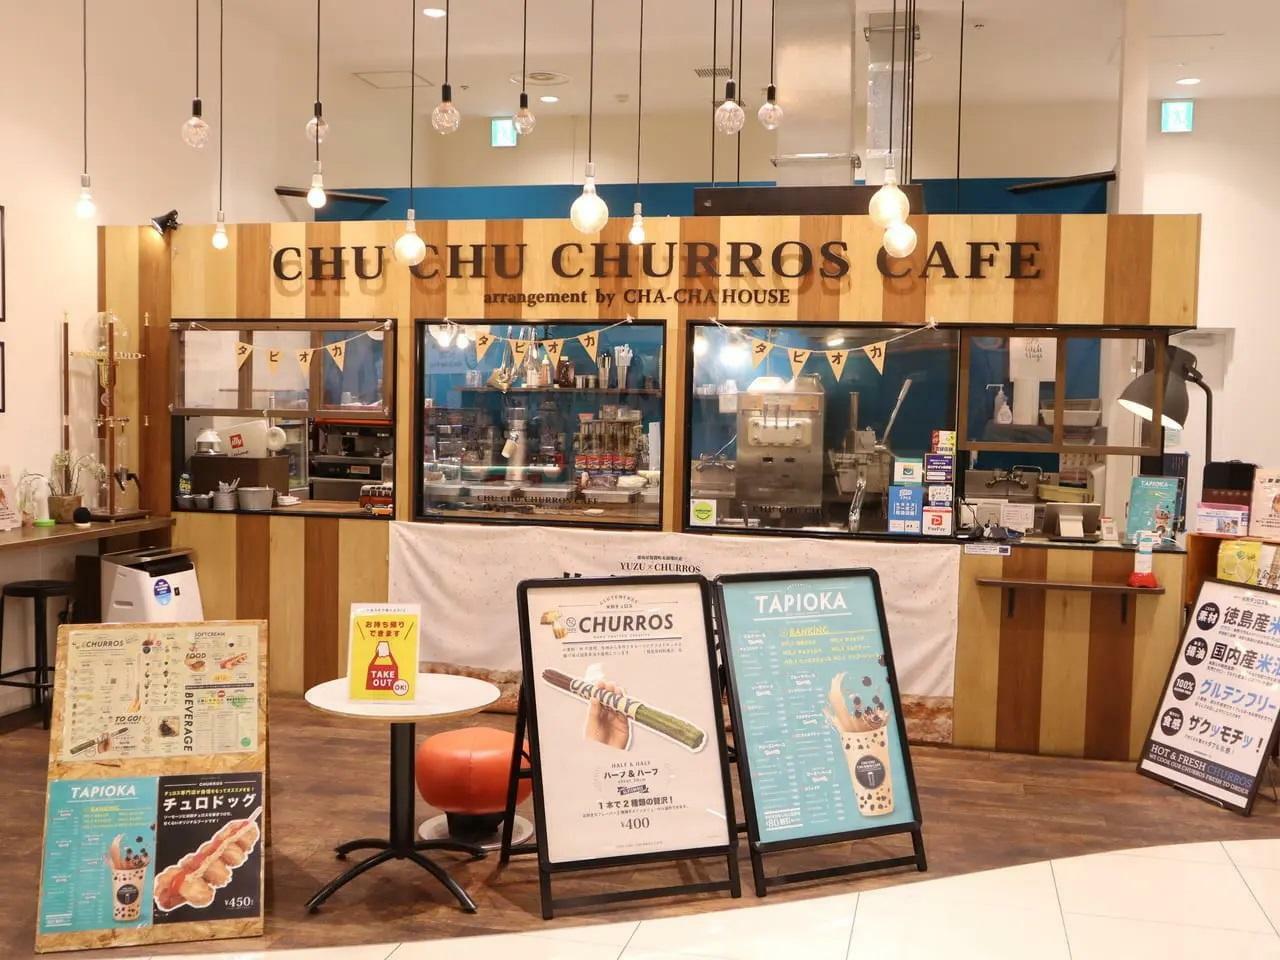 閉店以前に撮影した「CHU CHU CHURROS CAFE arrangement by CHA-CHA HOUSE」。